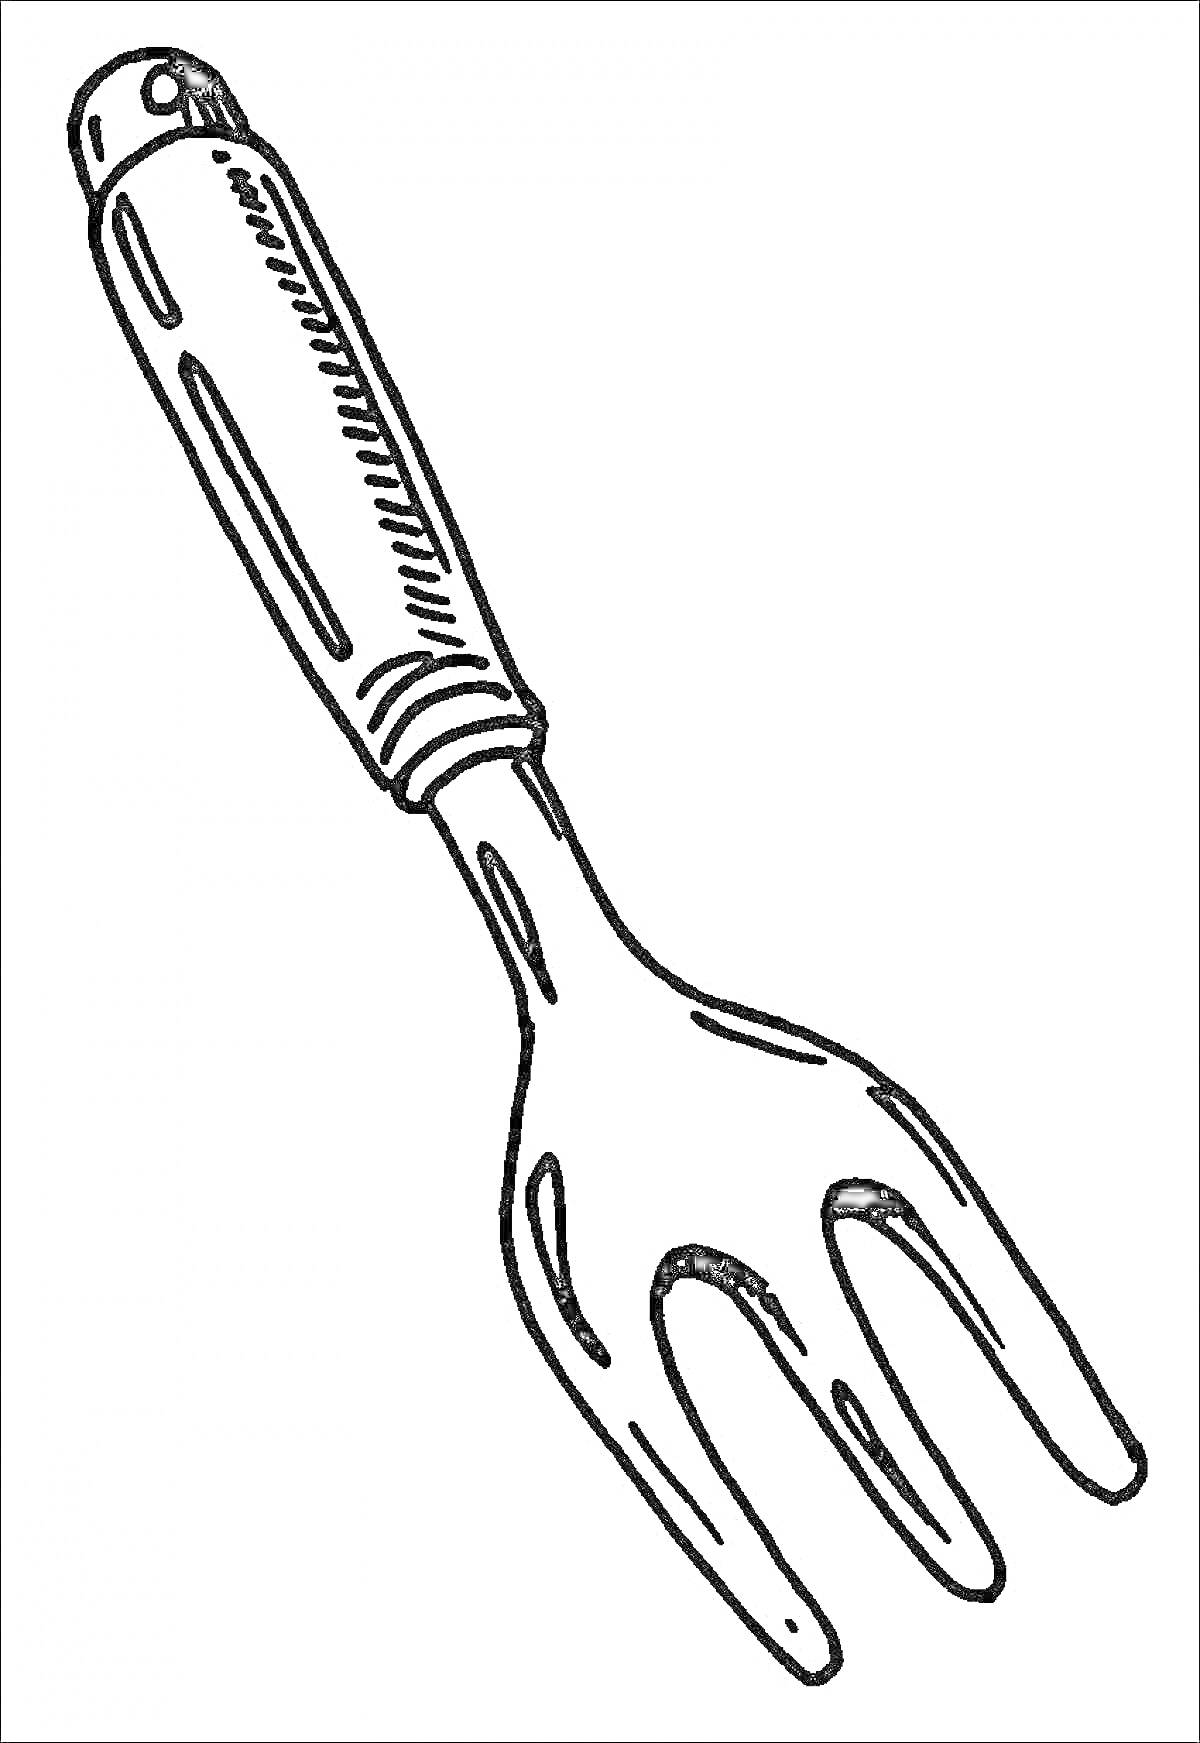 Раскраска Вилка с ручкой и зубьями для раскрашивания